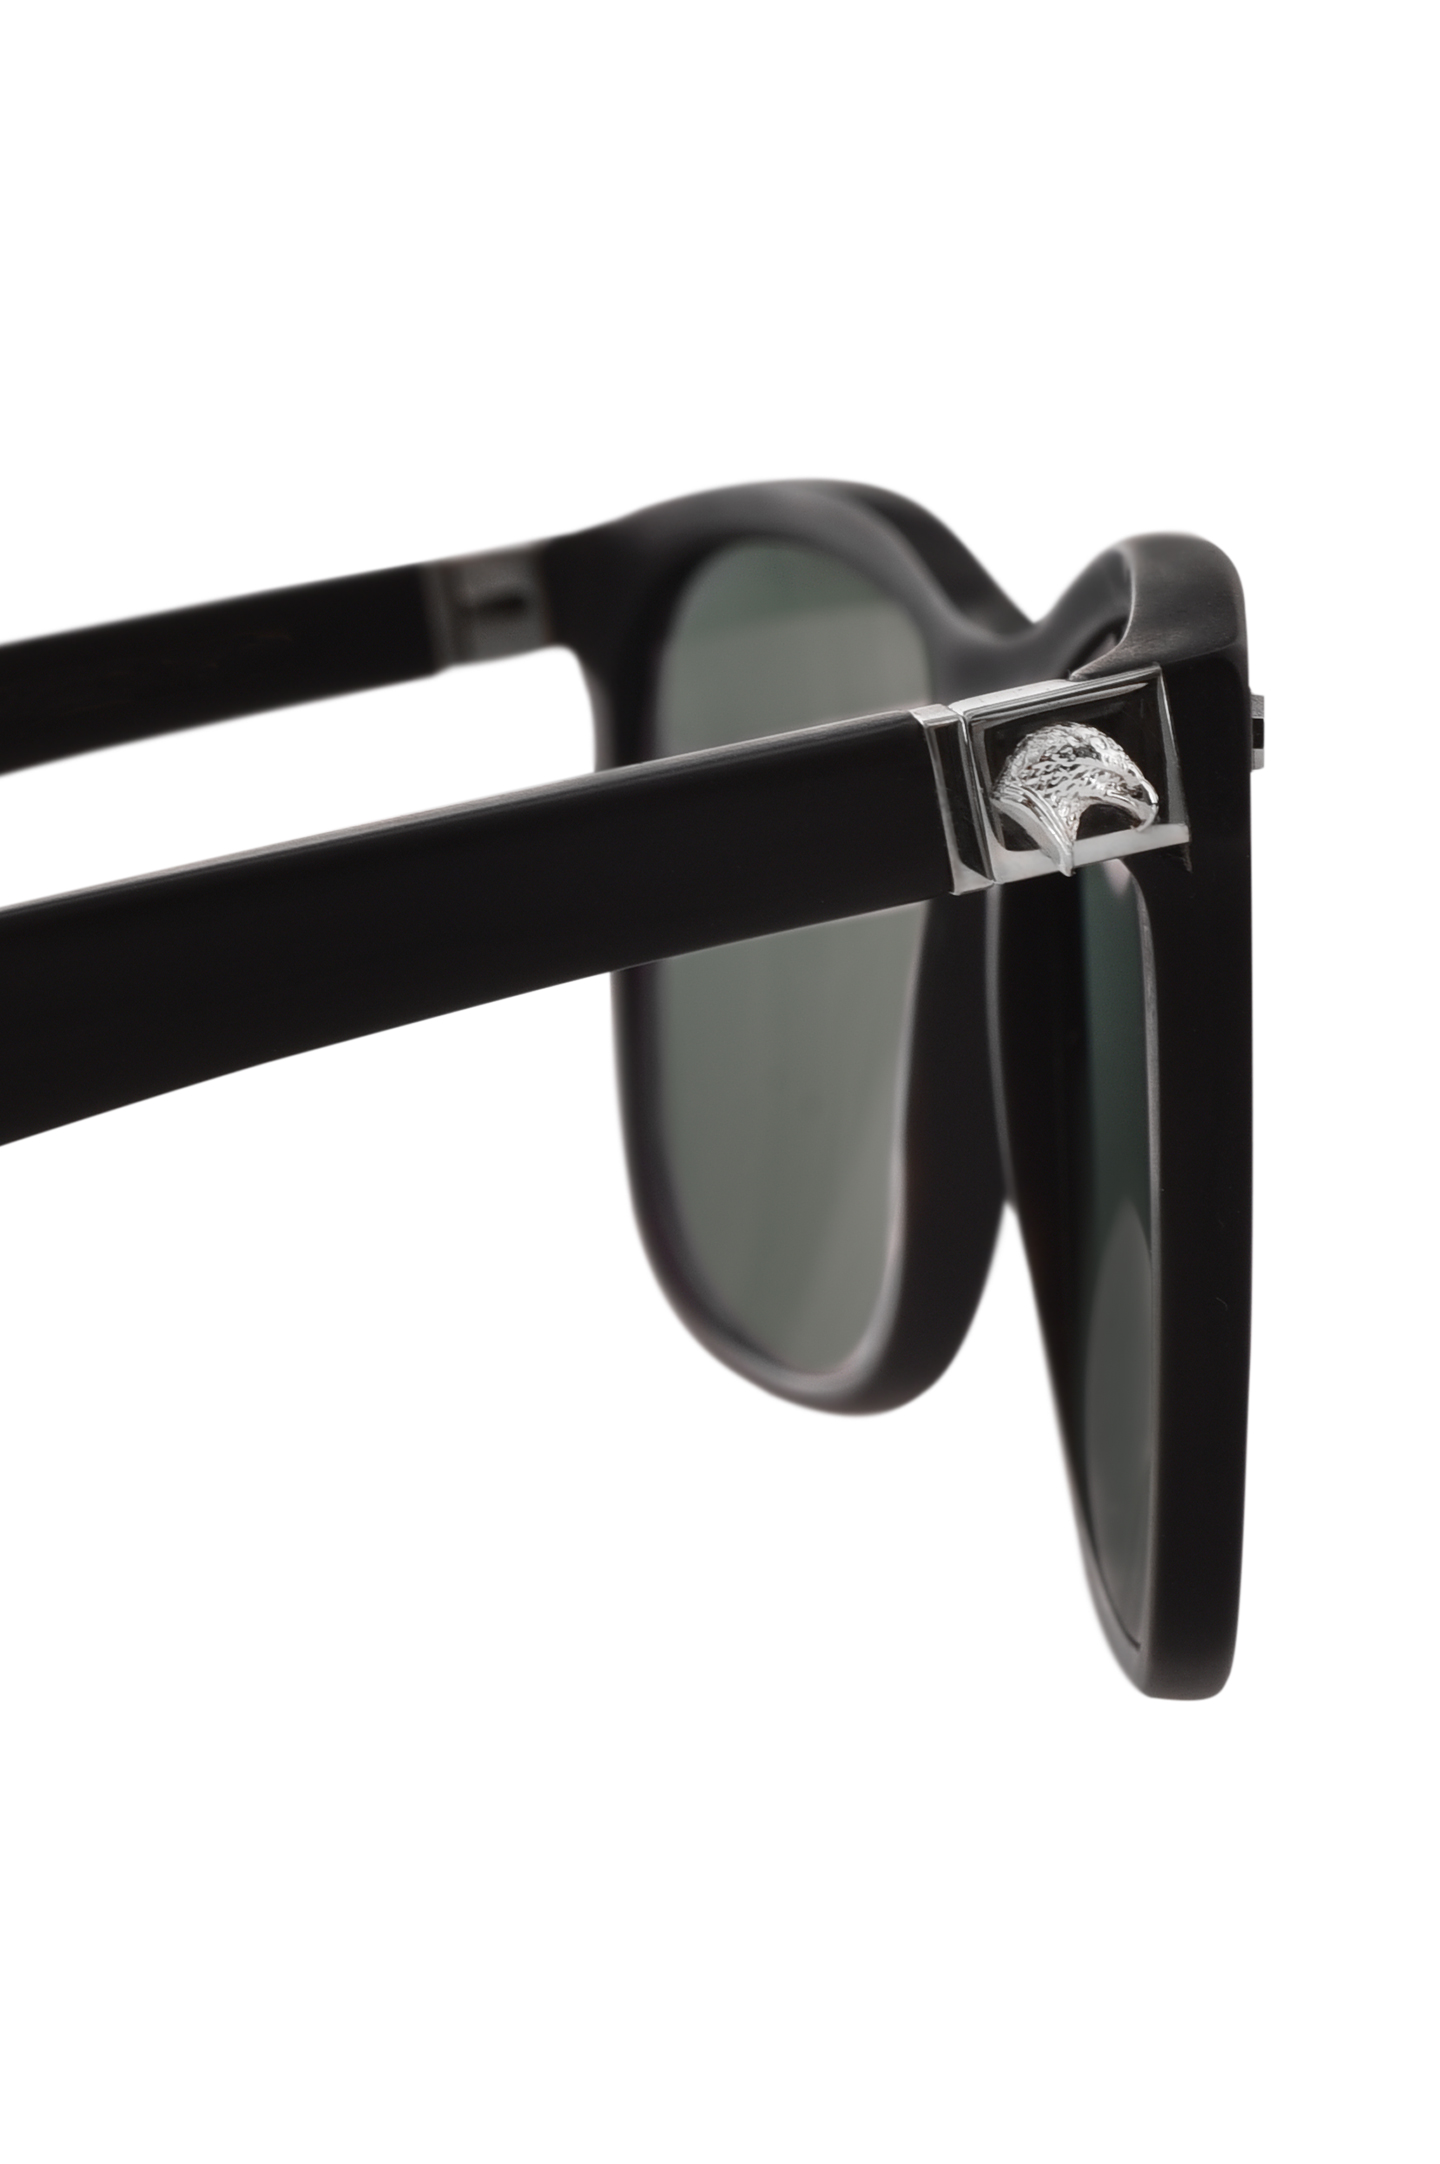 Солнцезащитные очки STEFANO RICCI SG04P HORN, цвет: Черный, Мужской